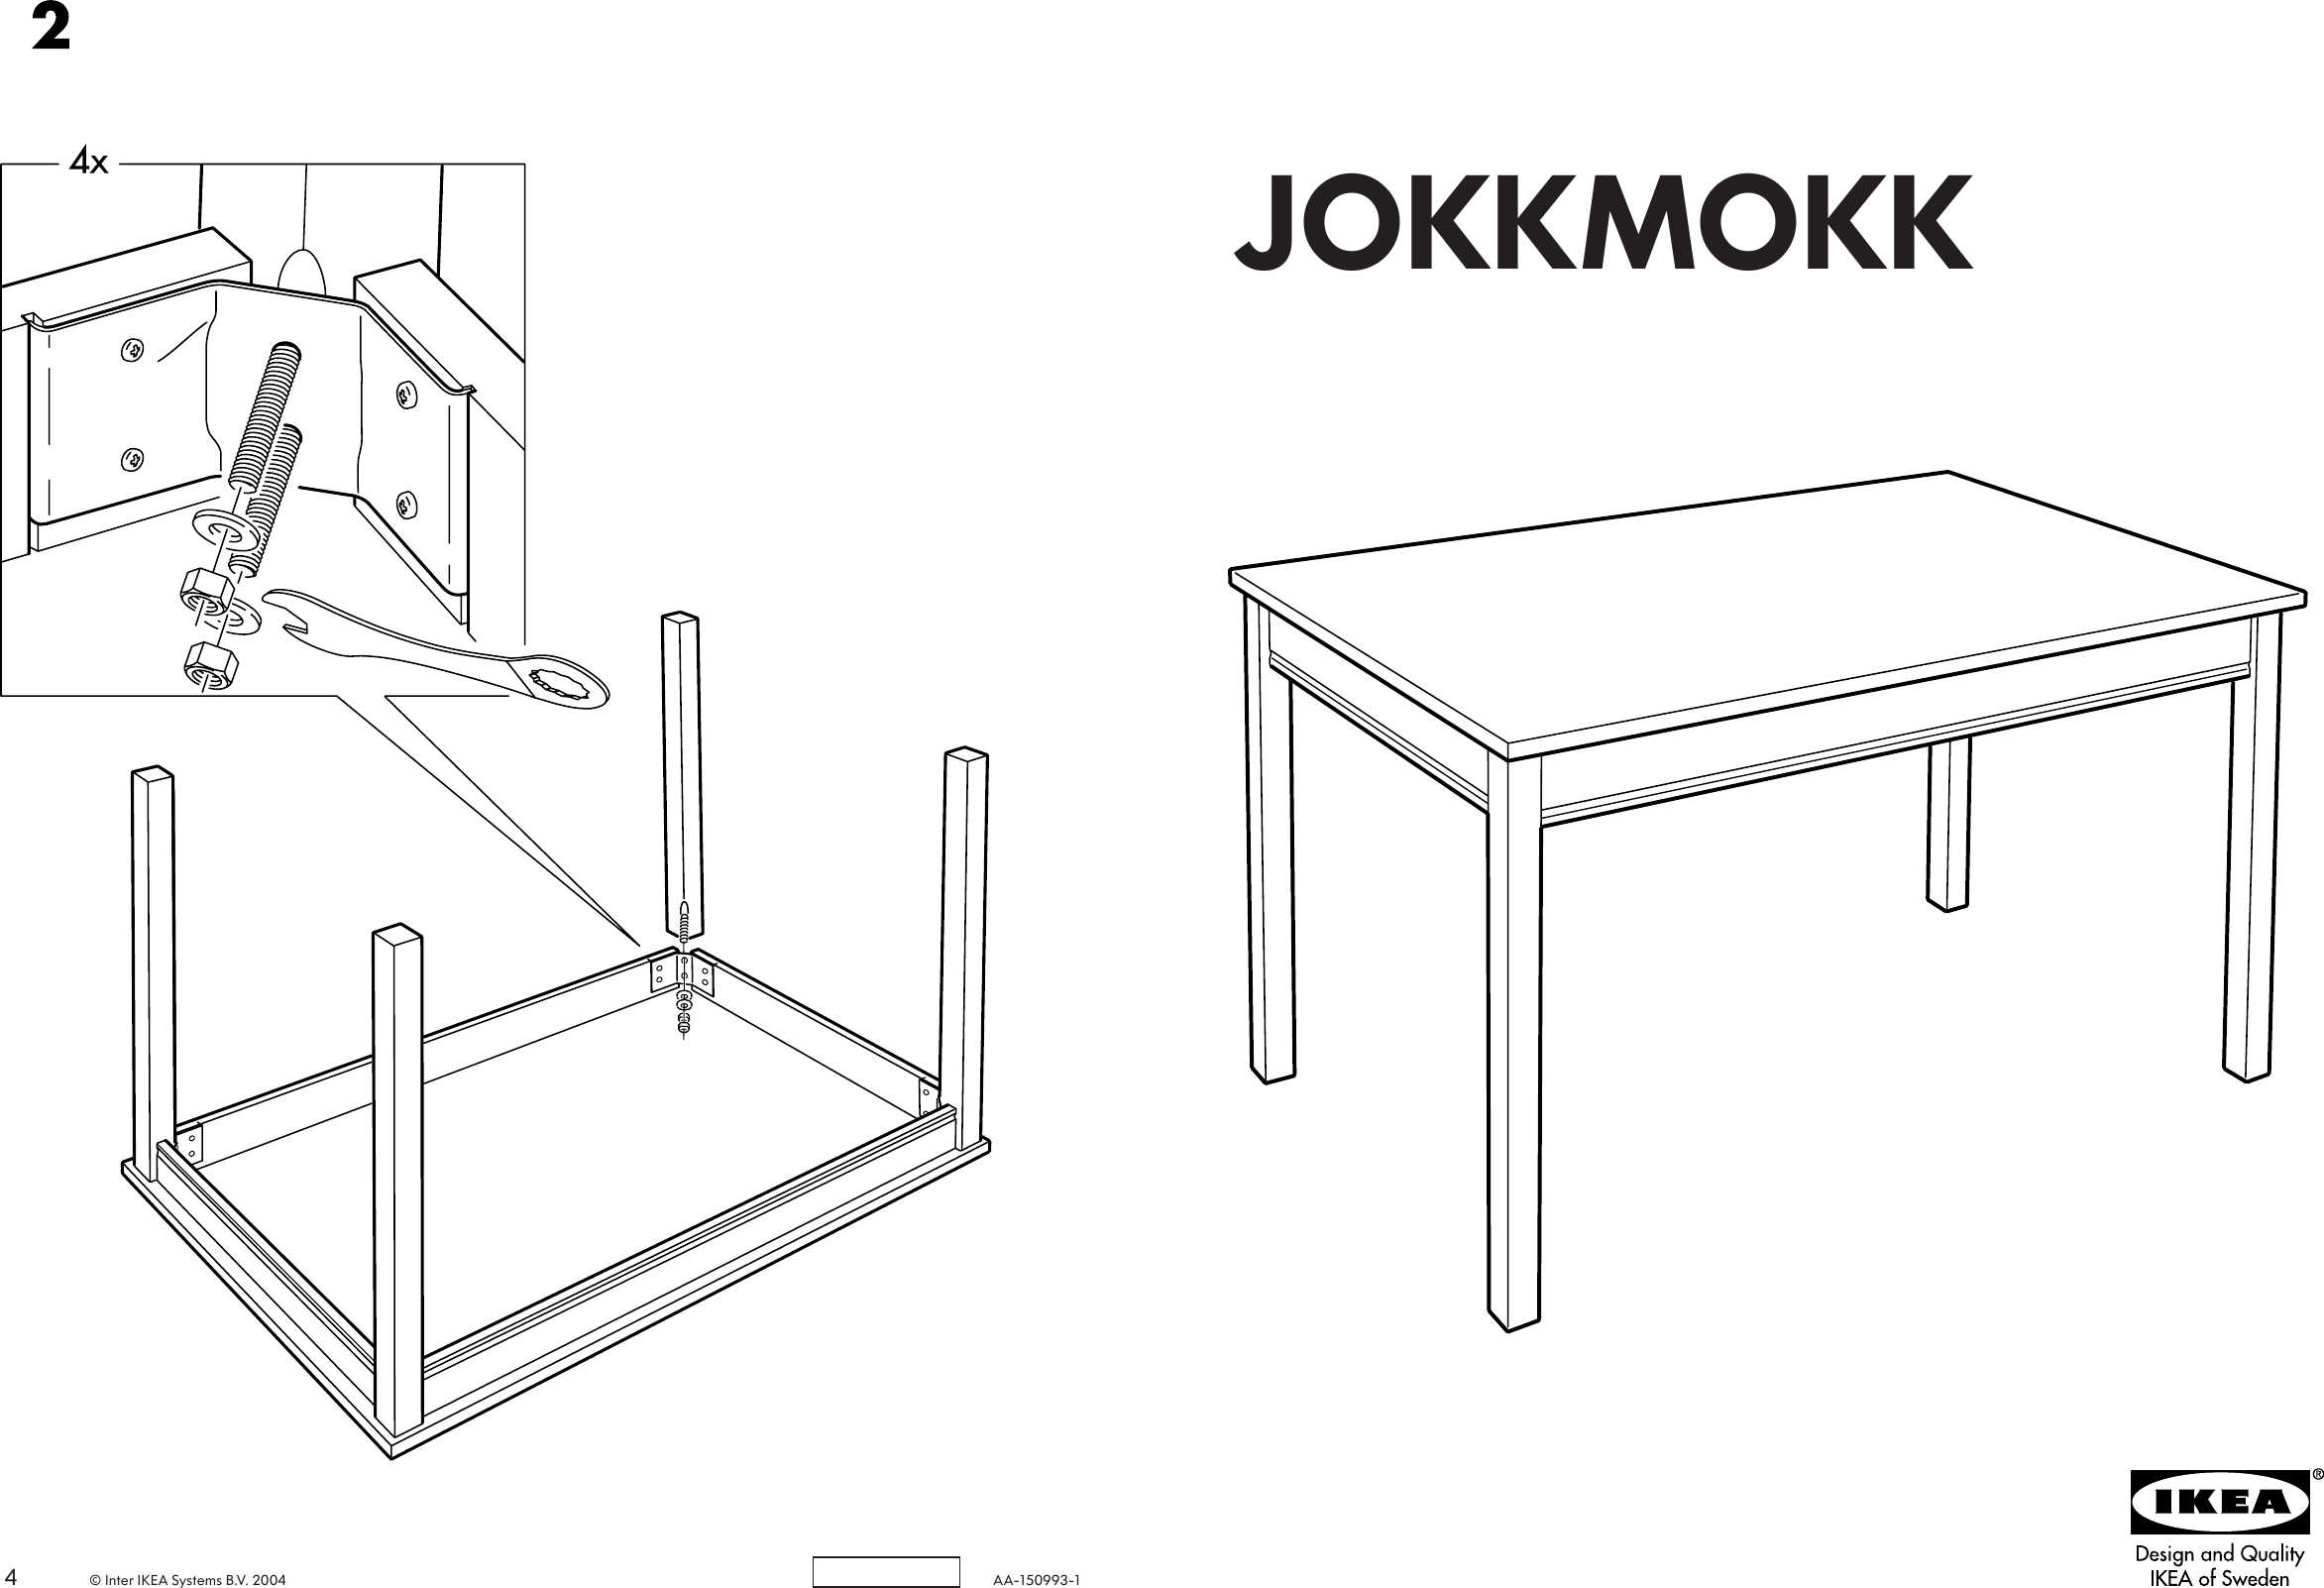 IkeaJokkmokkTableAssemblyInstruction.469490677 User Guide Page 1 